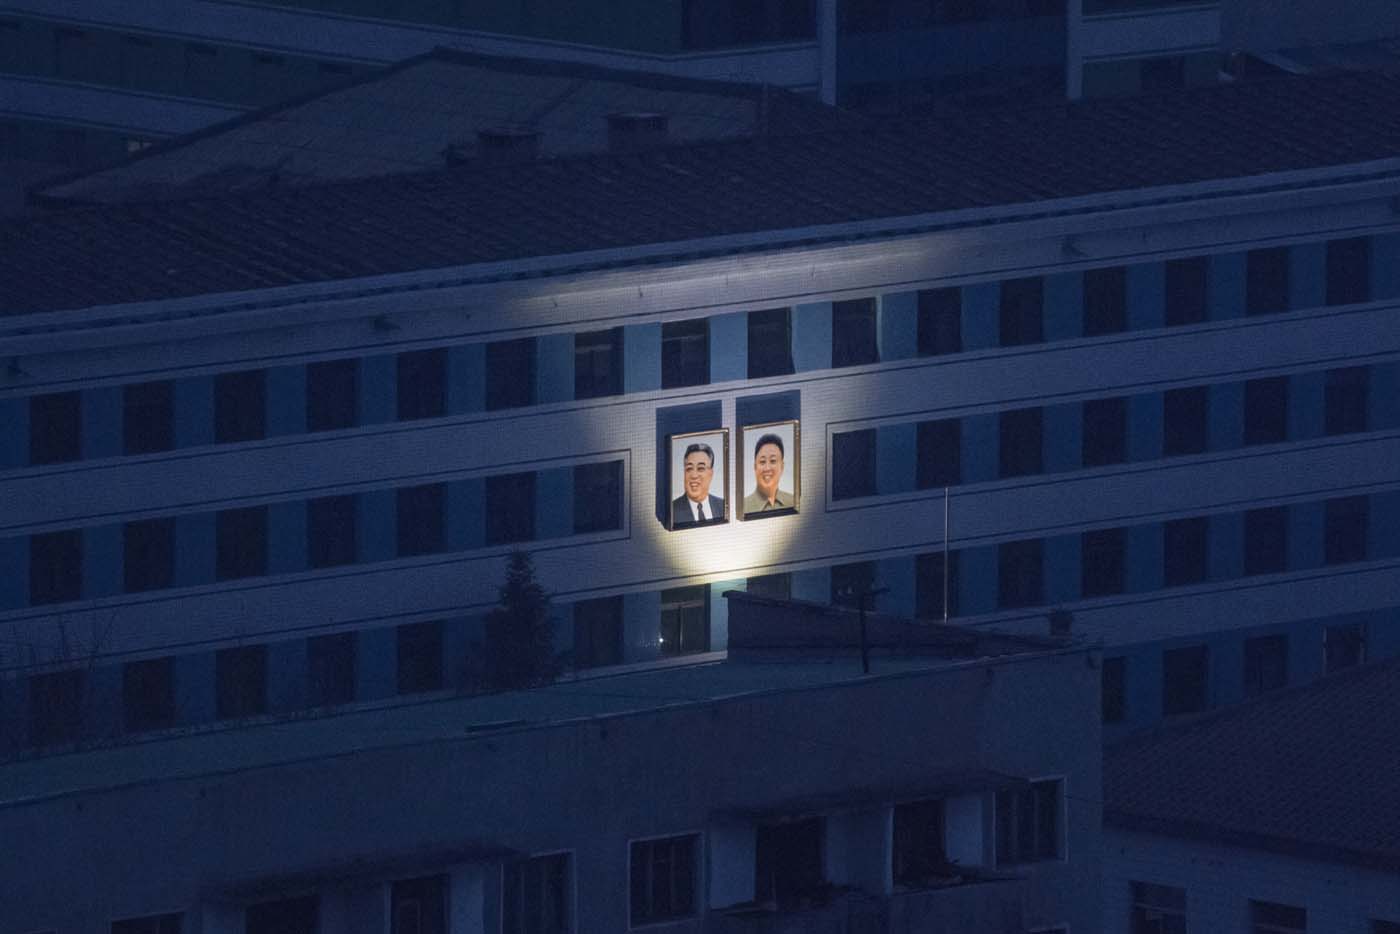 Corea del Norte proclama ser una “nación próspera” pero la escasez de electricidad dice lo contrario (fotos)